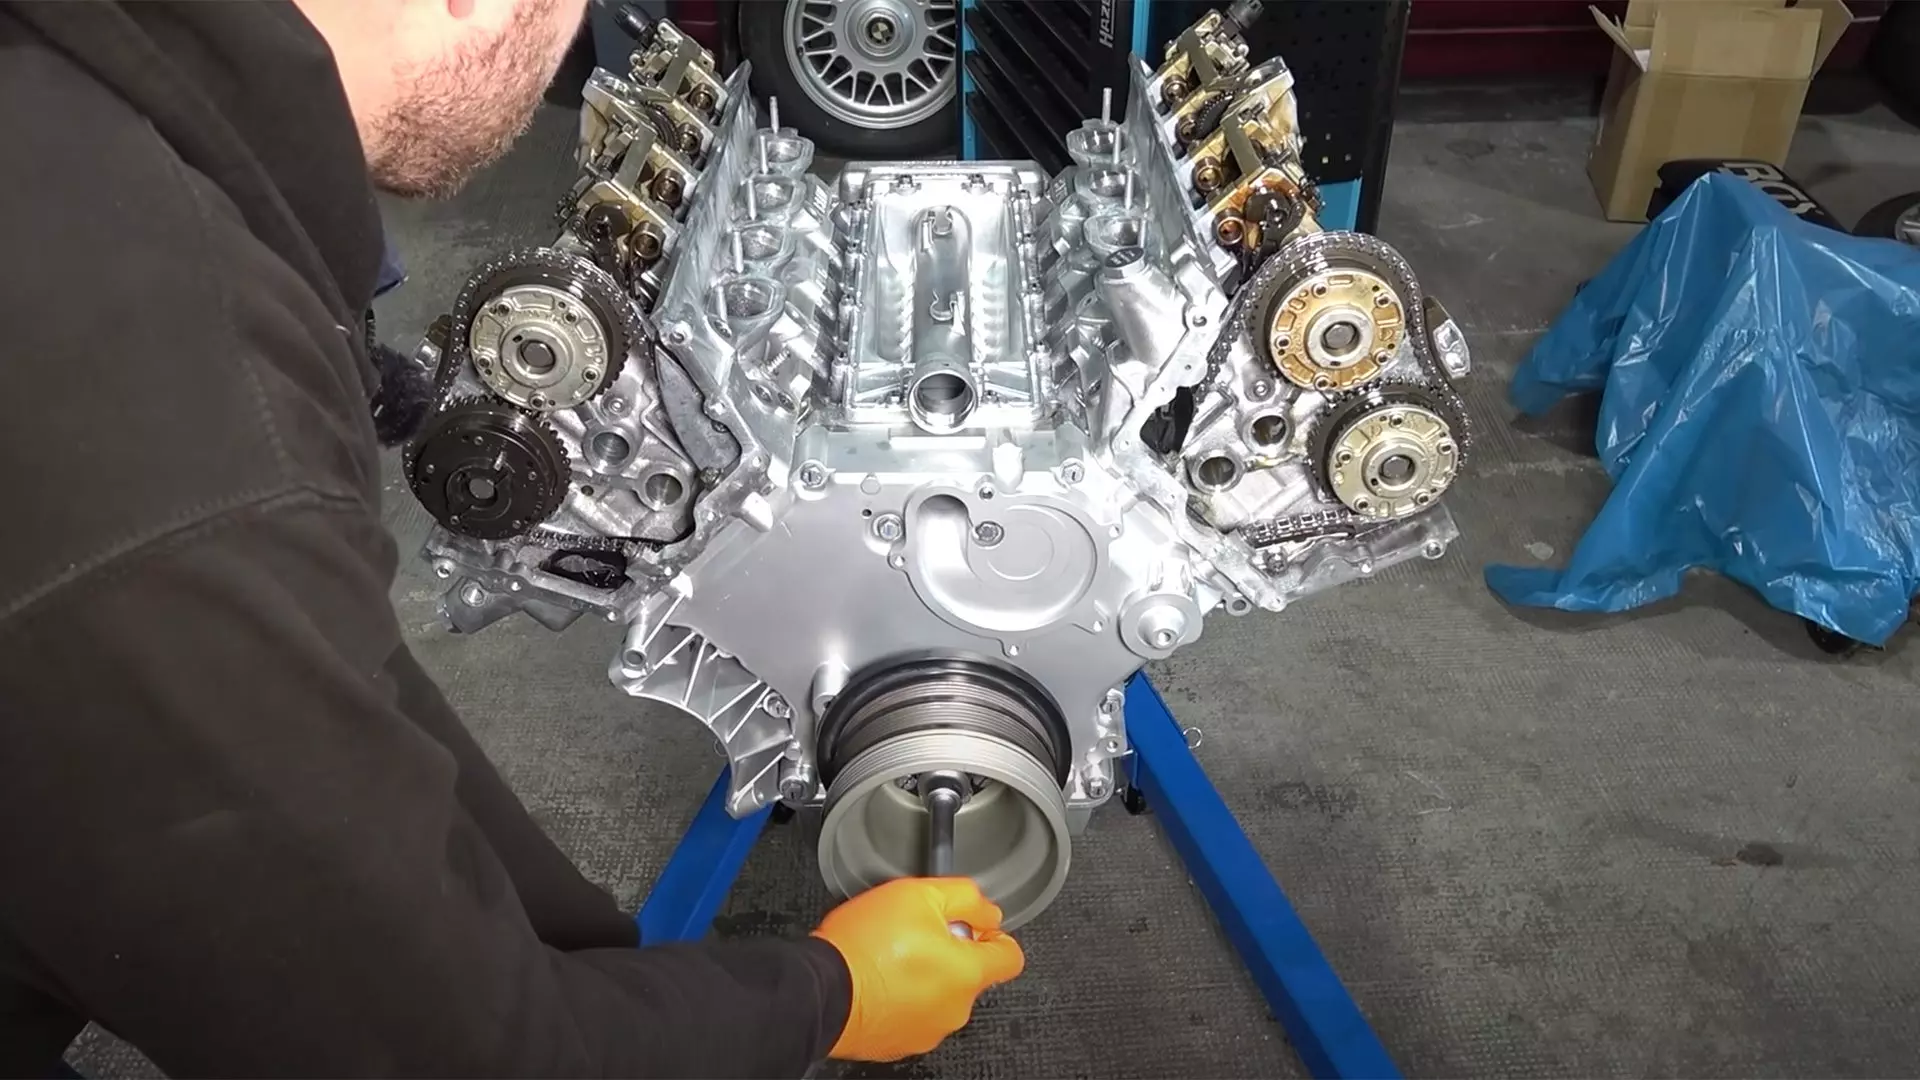 Get Lost in a Therapeutic Alpina B7 Engine Rebuild